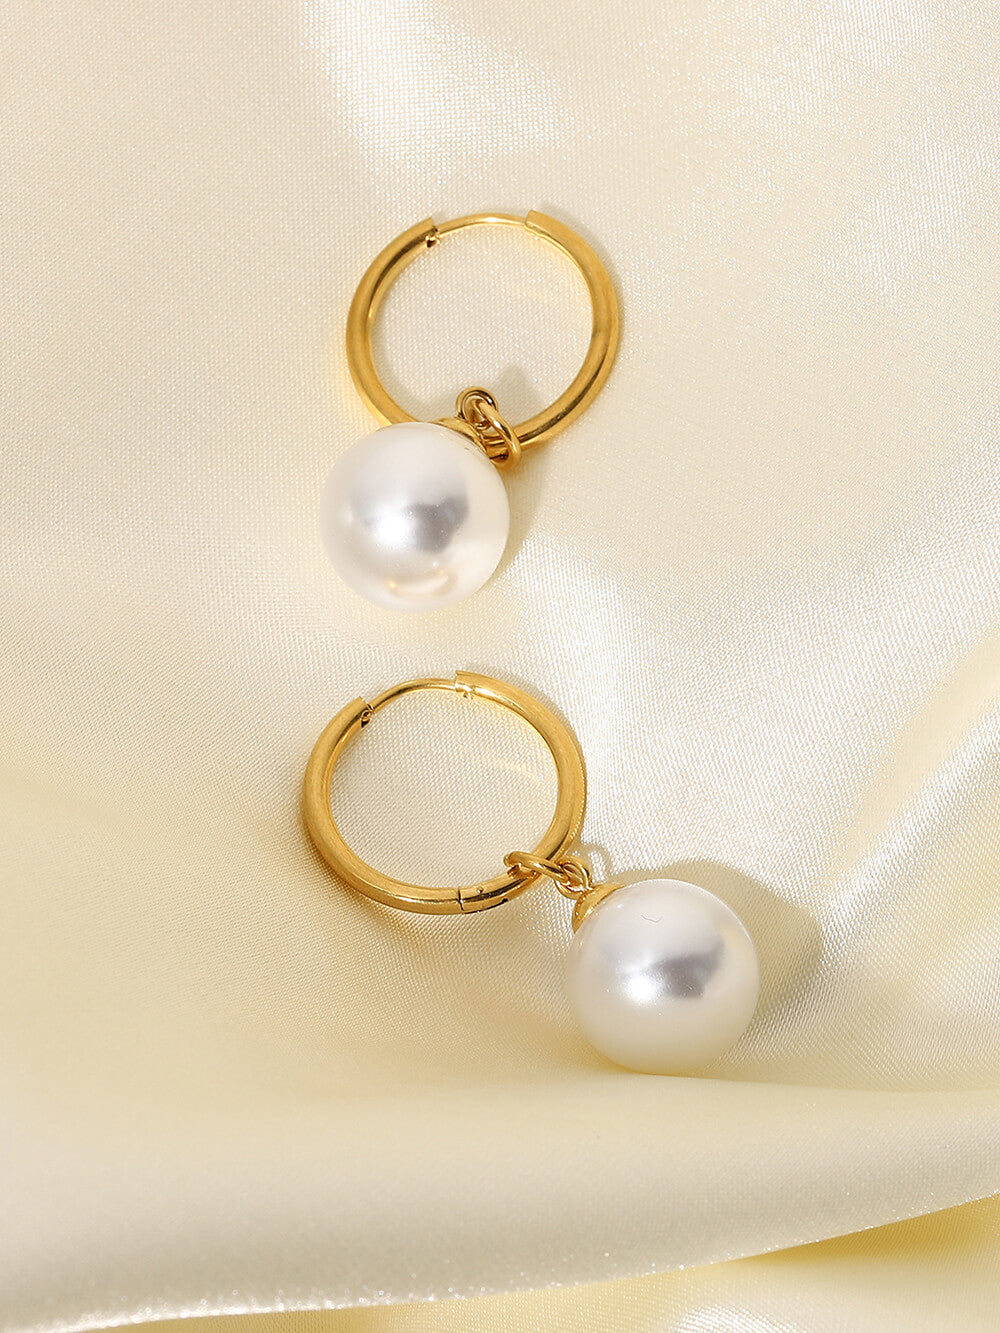 Vintage náušnice sladkovodní perly